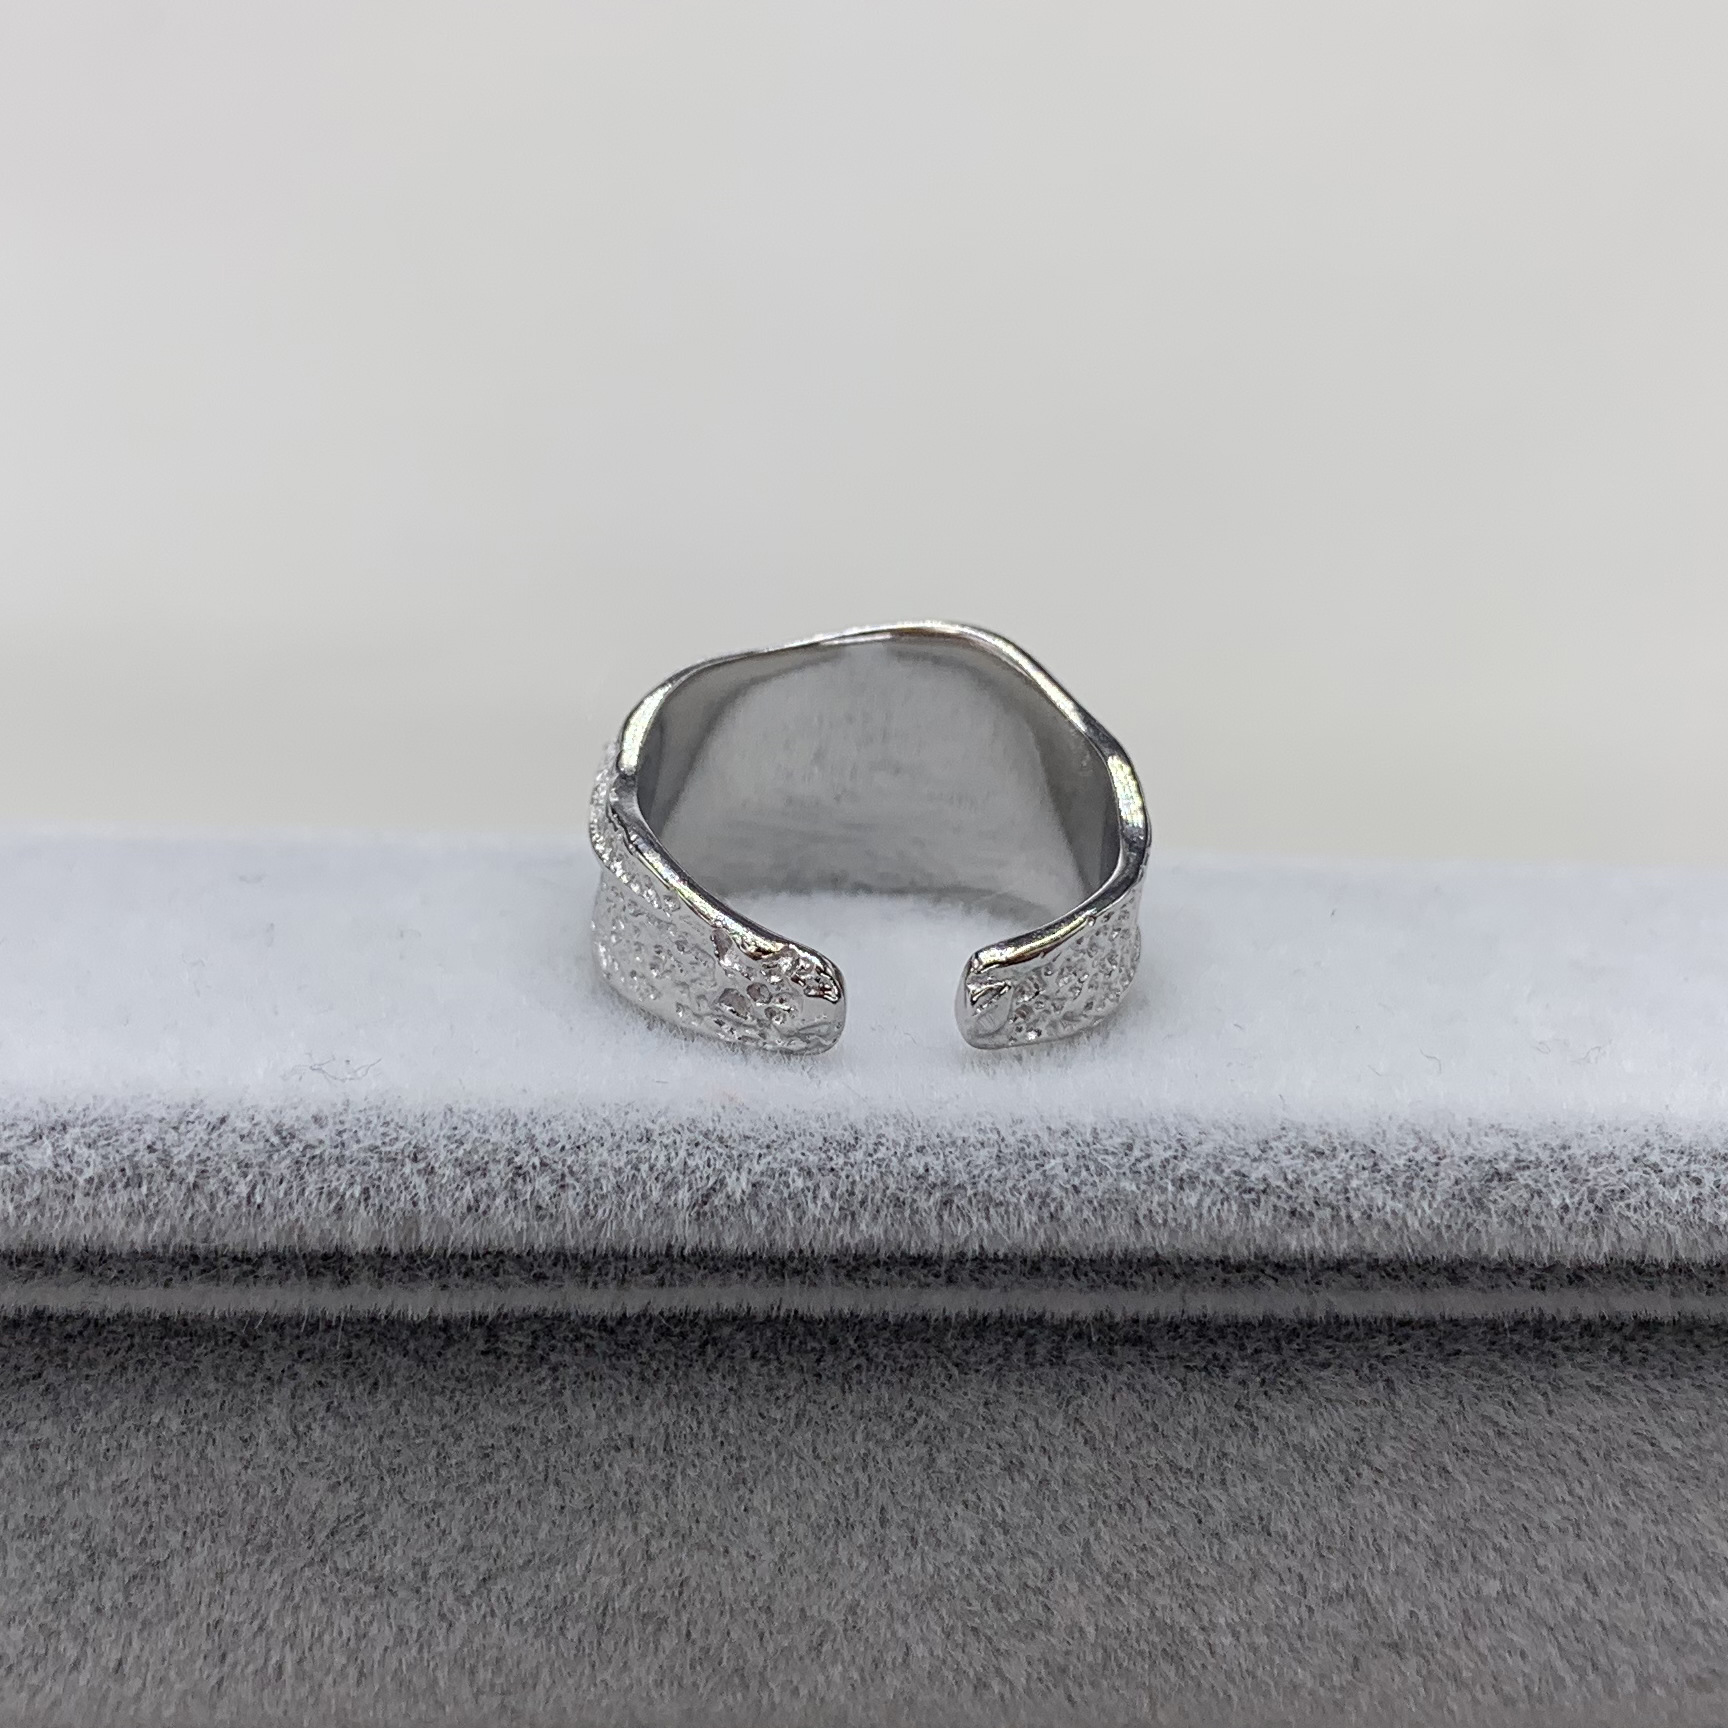 Gorąca sprzedaż s925 srebro w Europie i Ameryce, popularny francuski otwarty pierścień dla kobiet